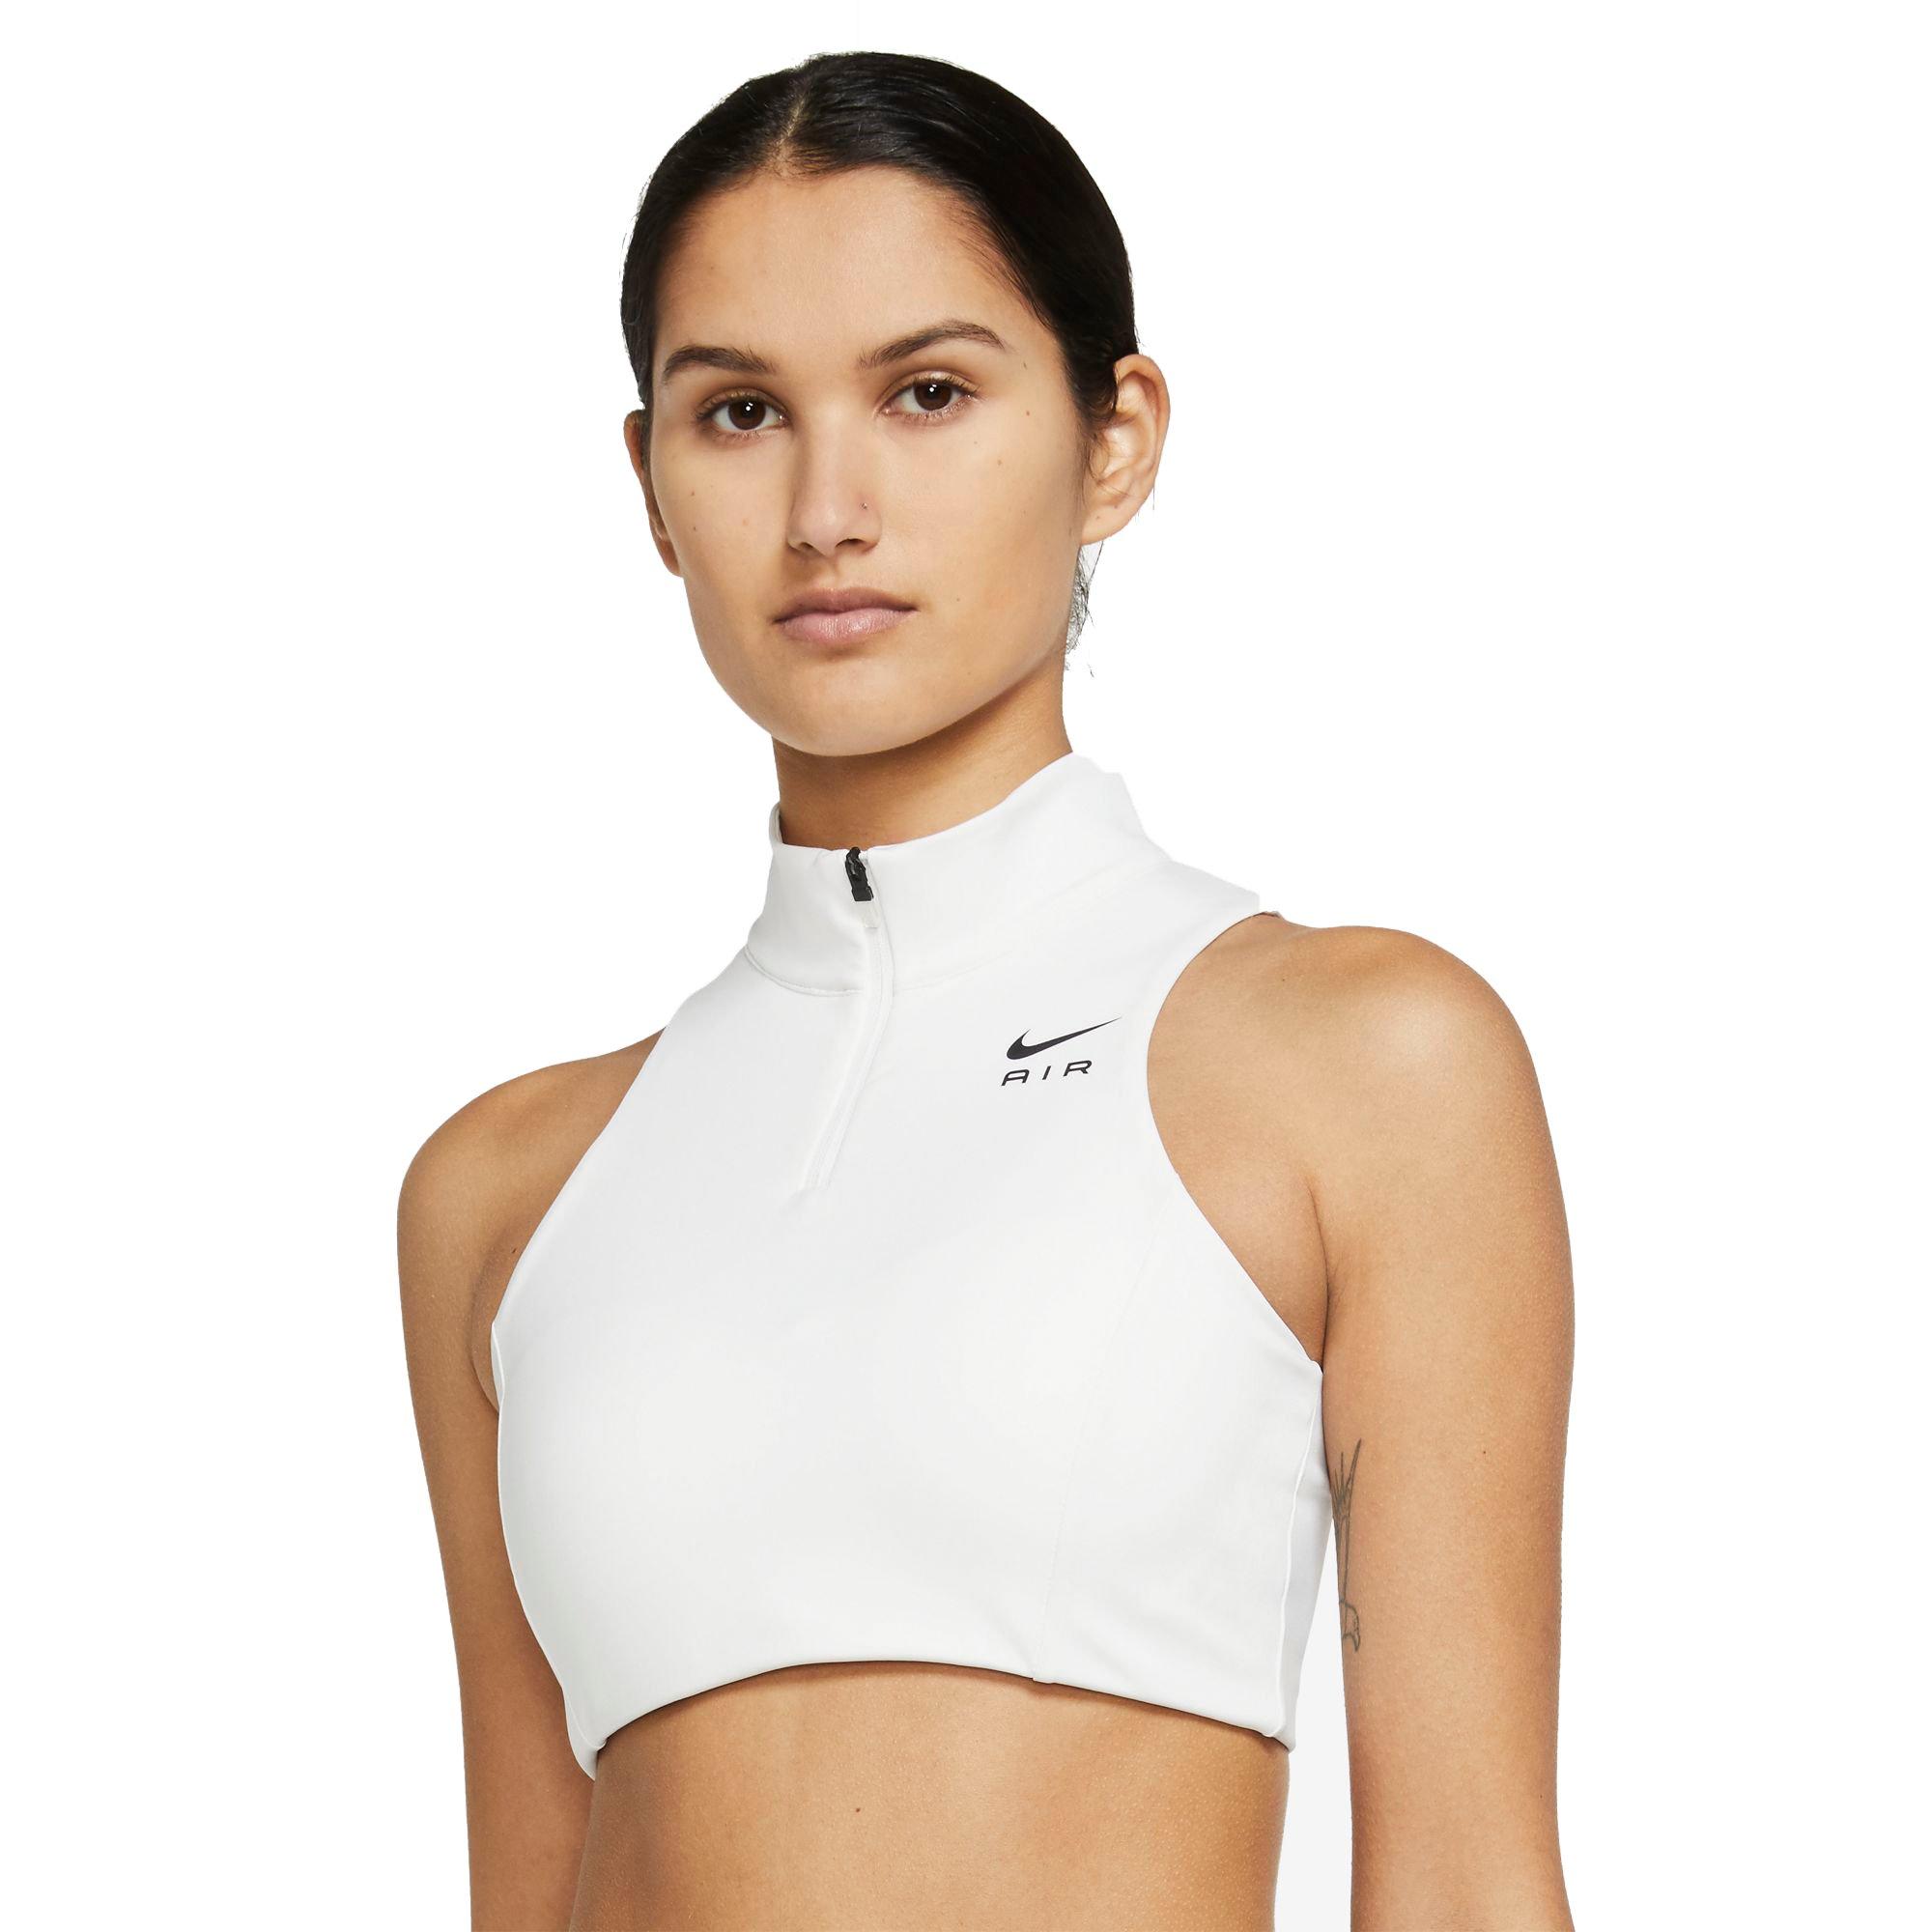 Nike pro bra pop-up store  Popitup.eu – Pop-up shops as a service